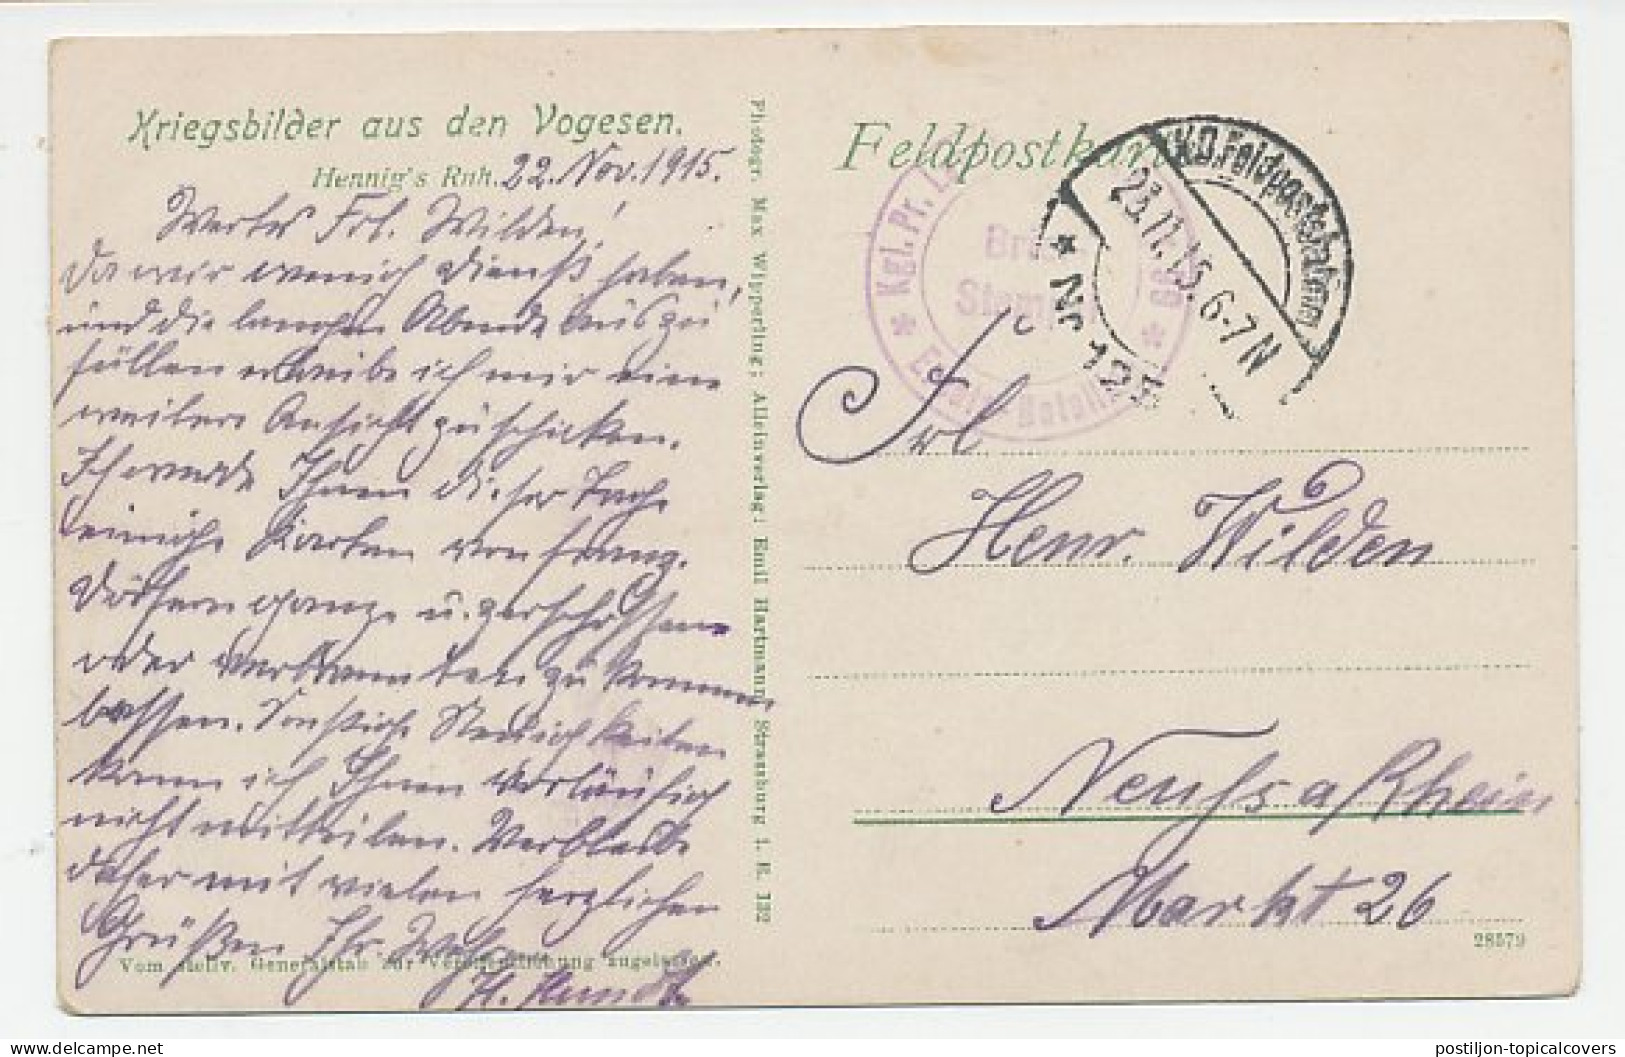 Fieldpost Postcard Germany / France 1915 Rest - WWI - WW1